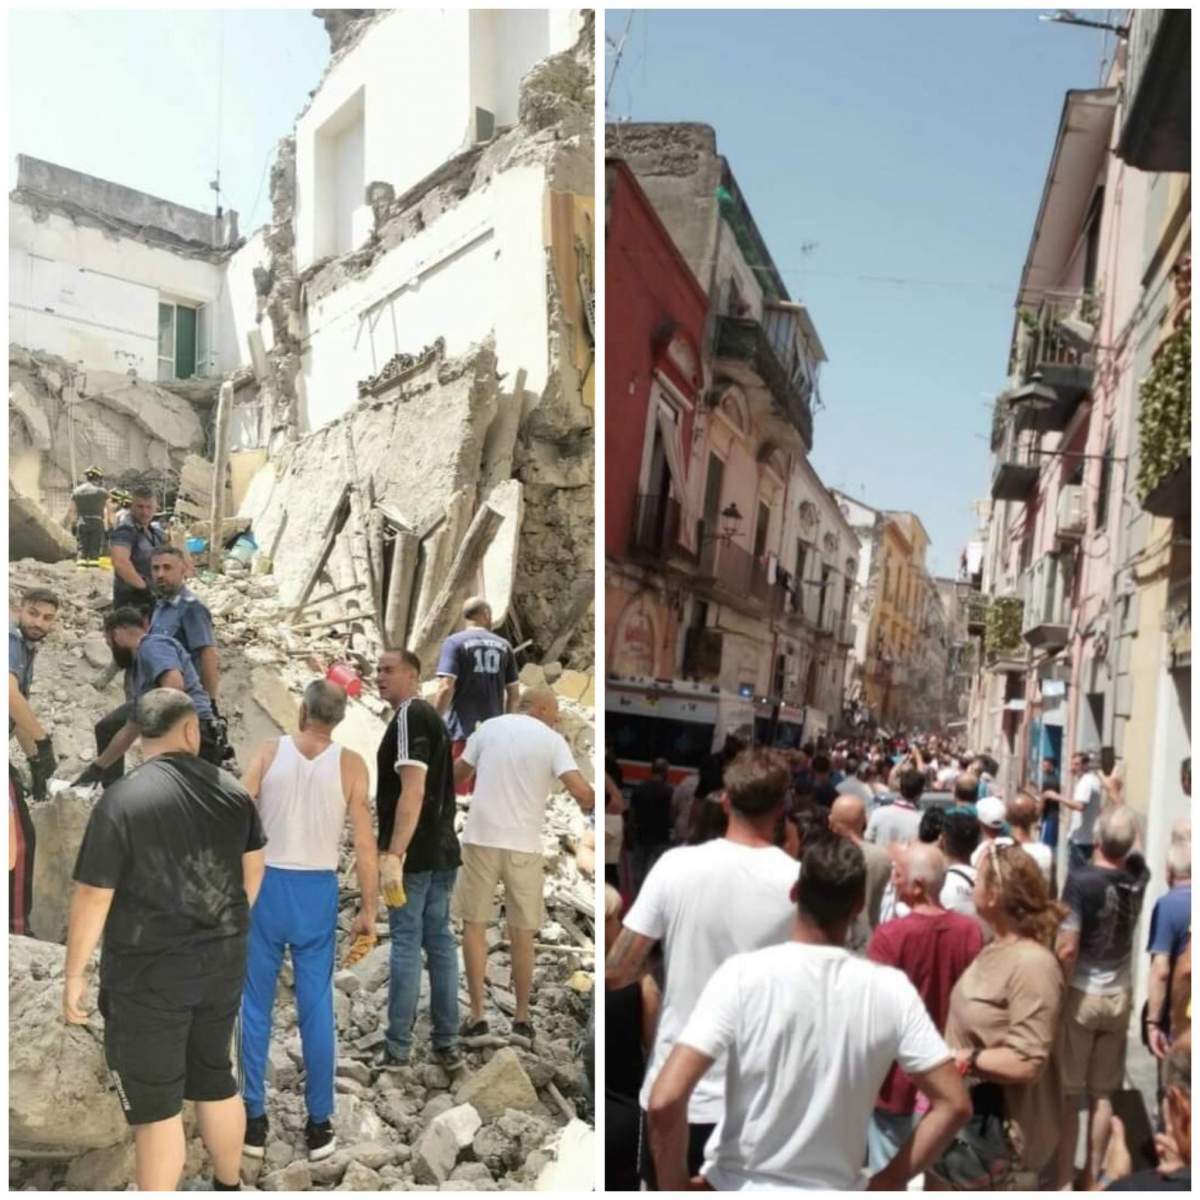 Colaj blocul care s-a prăbușit în apropiere de Napoli, în Italia